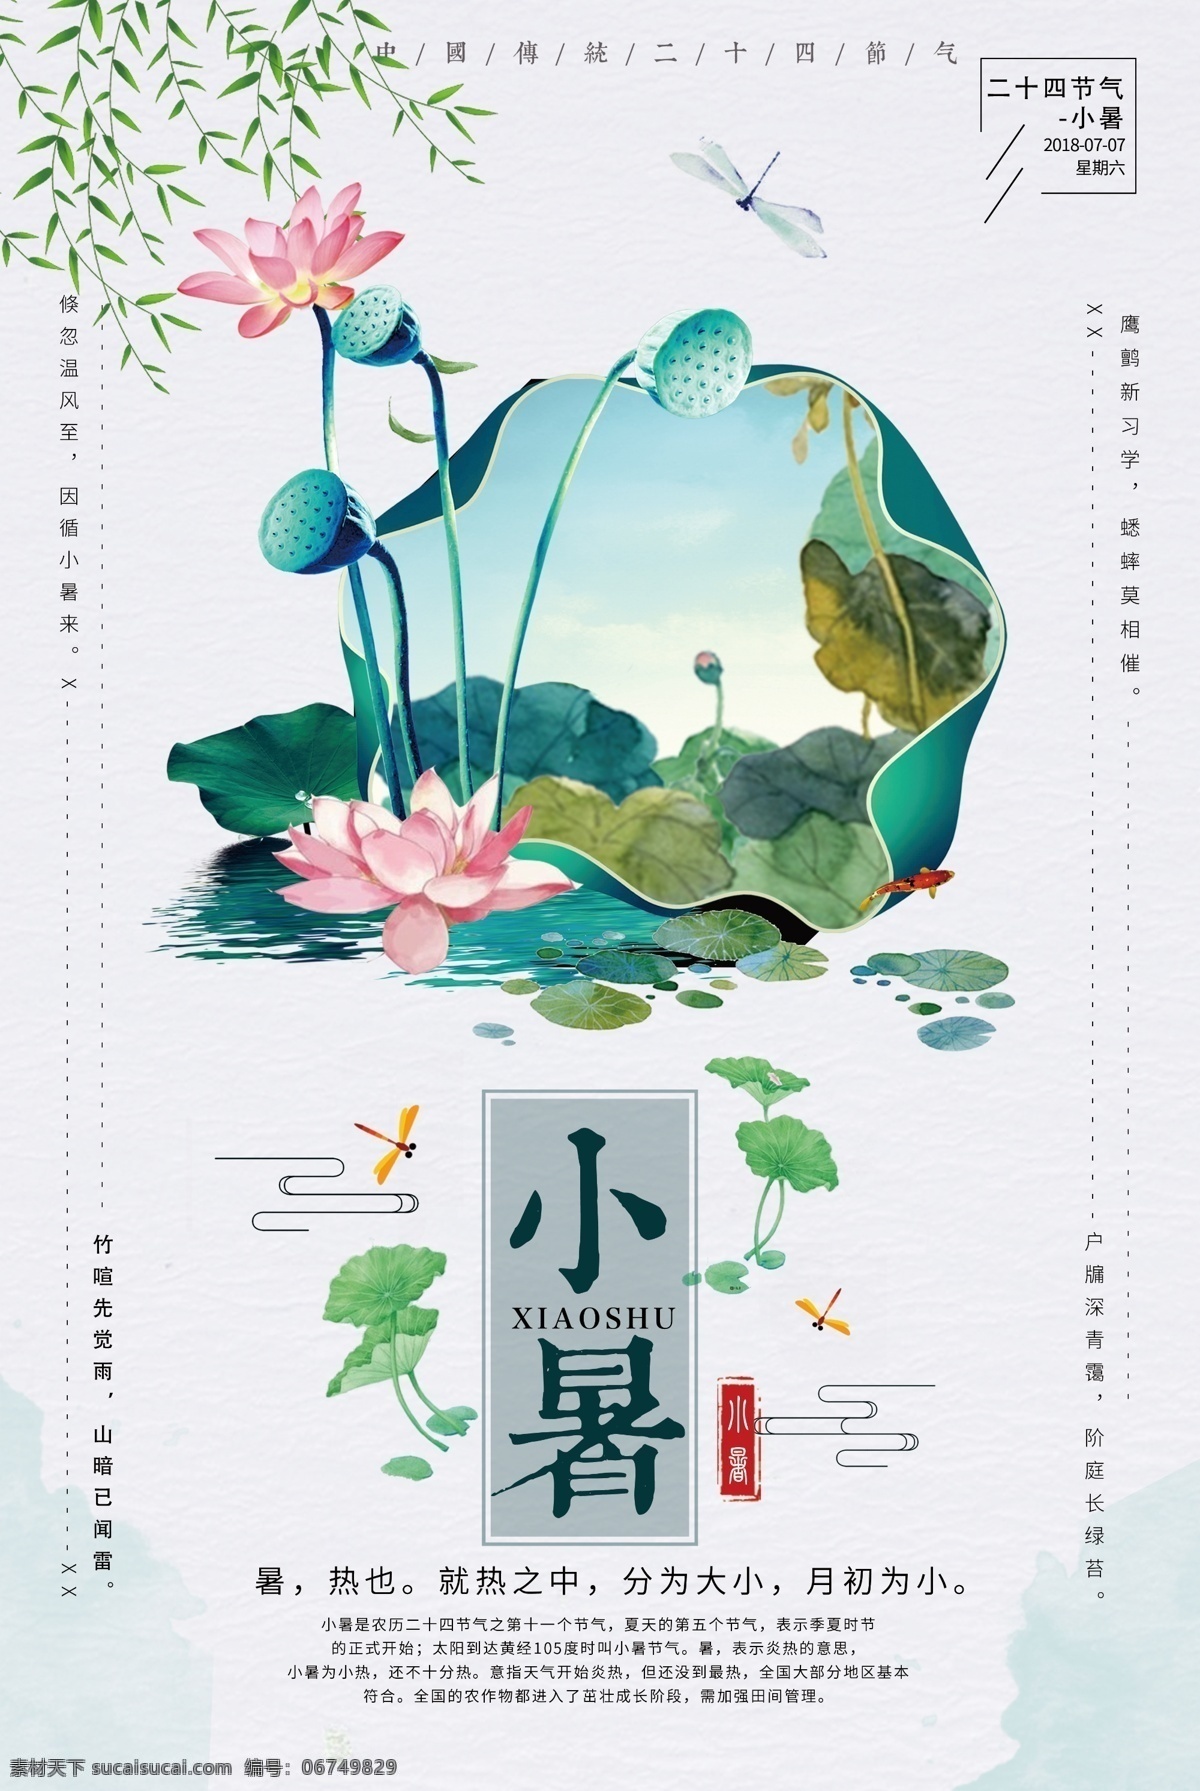 二十四节气 小暑 海报 节日 传统节日 中国习俗 小暑海报 节日海报 24节气